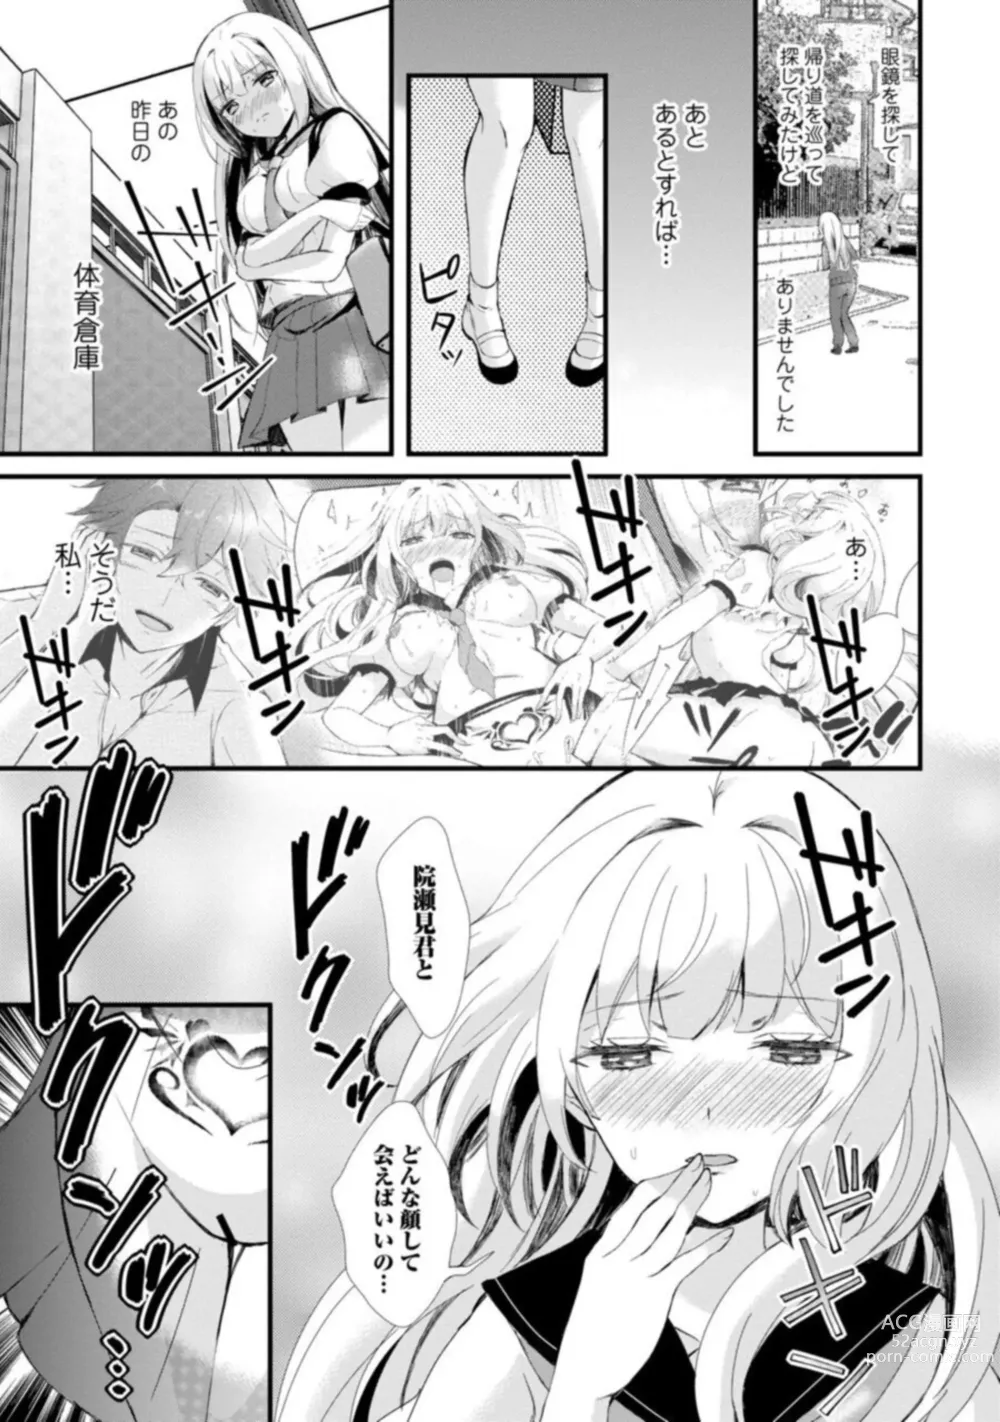 Page 50 of manga Inma no Torihiki ~ Shojonanoni oku made Sosoga re Chau! Inma no ai wa Atsuku Torokete ~ 1-2